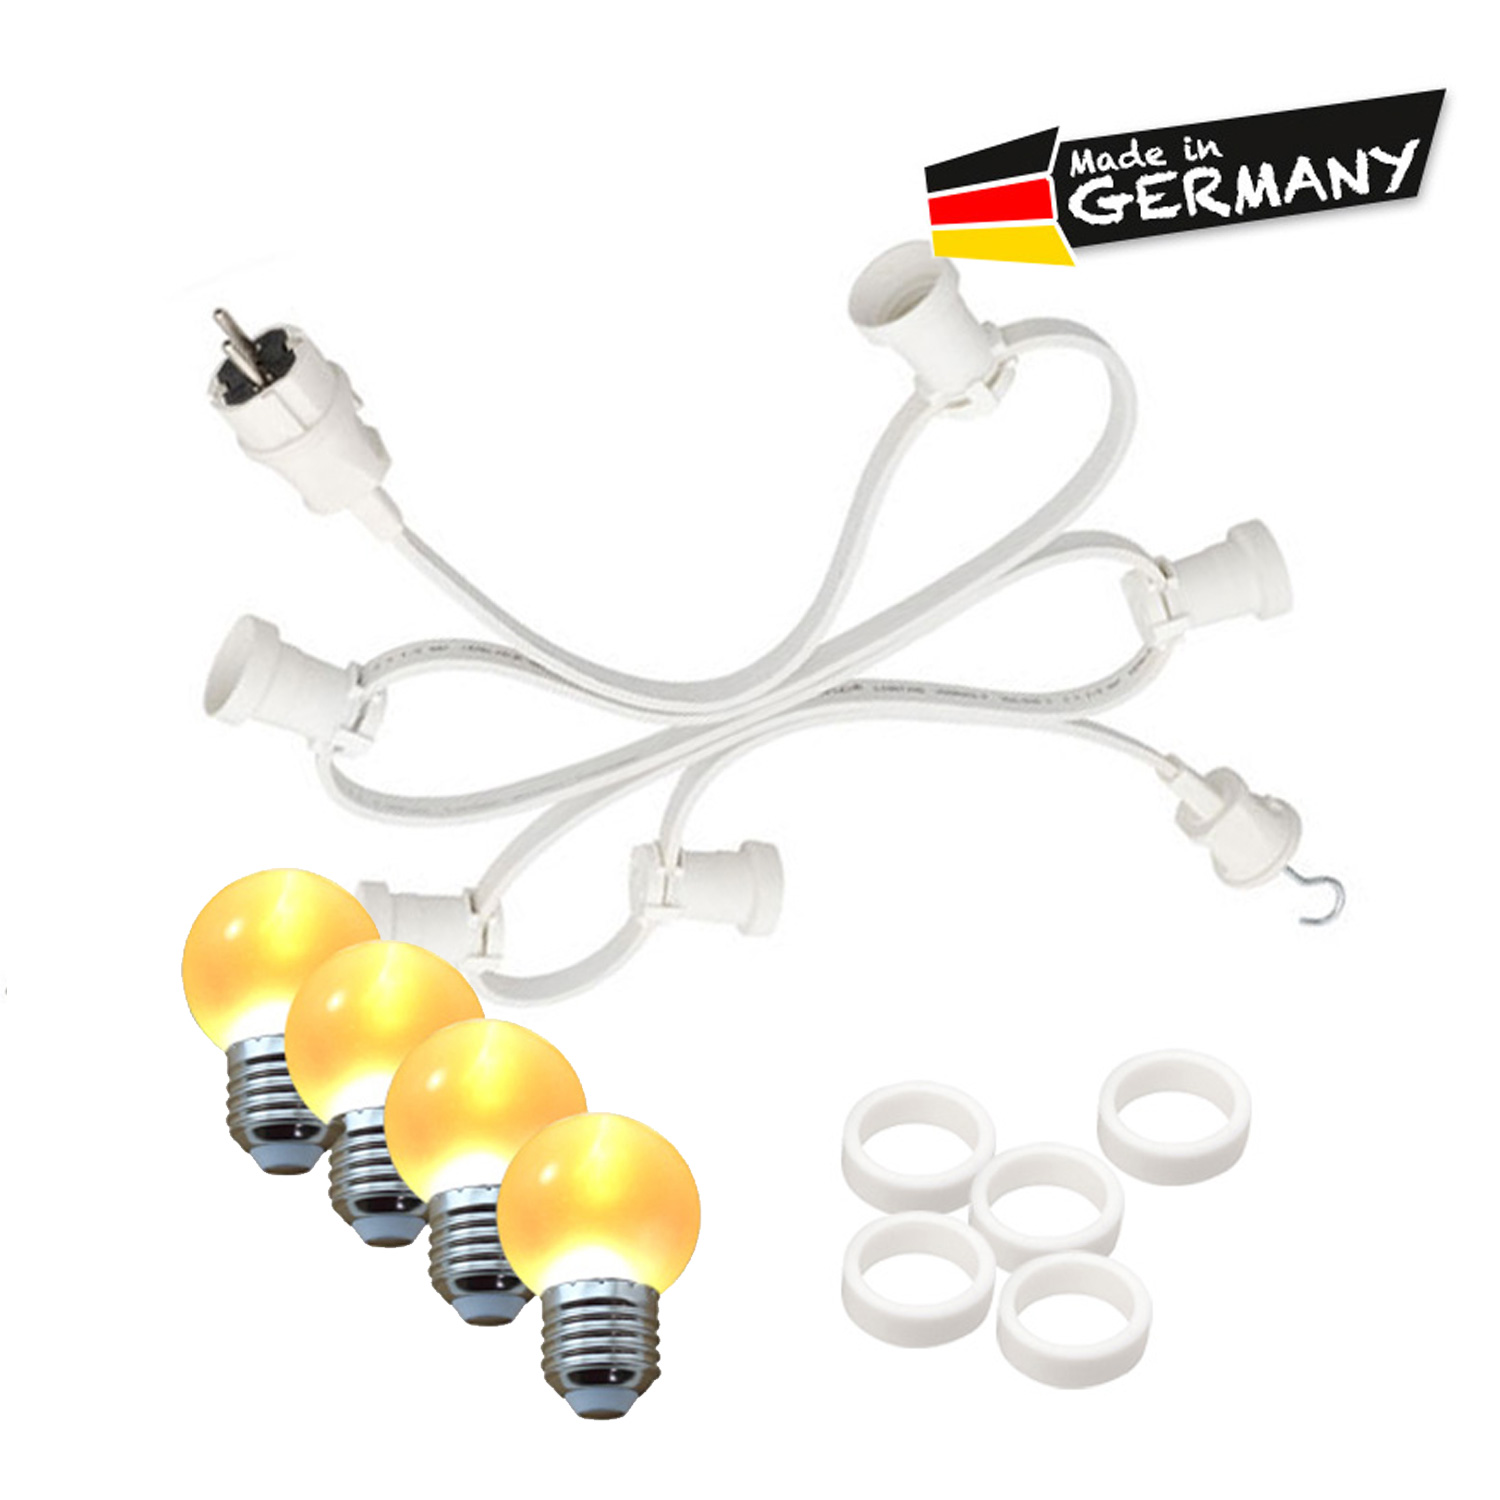 Illu-/Partylichterkette 50m - Außenlichterkette - Made in Germany - 50 x ultra-warmweiße LED Kugeln